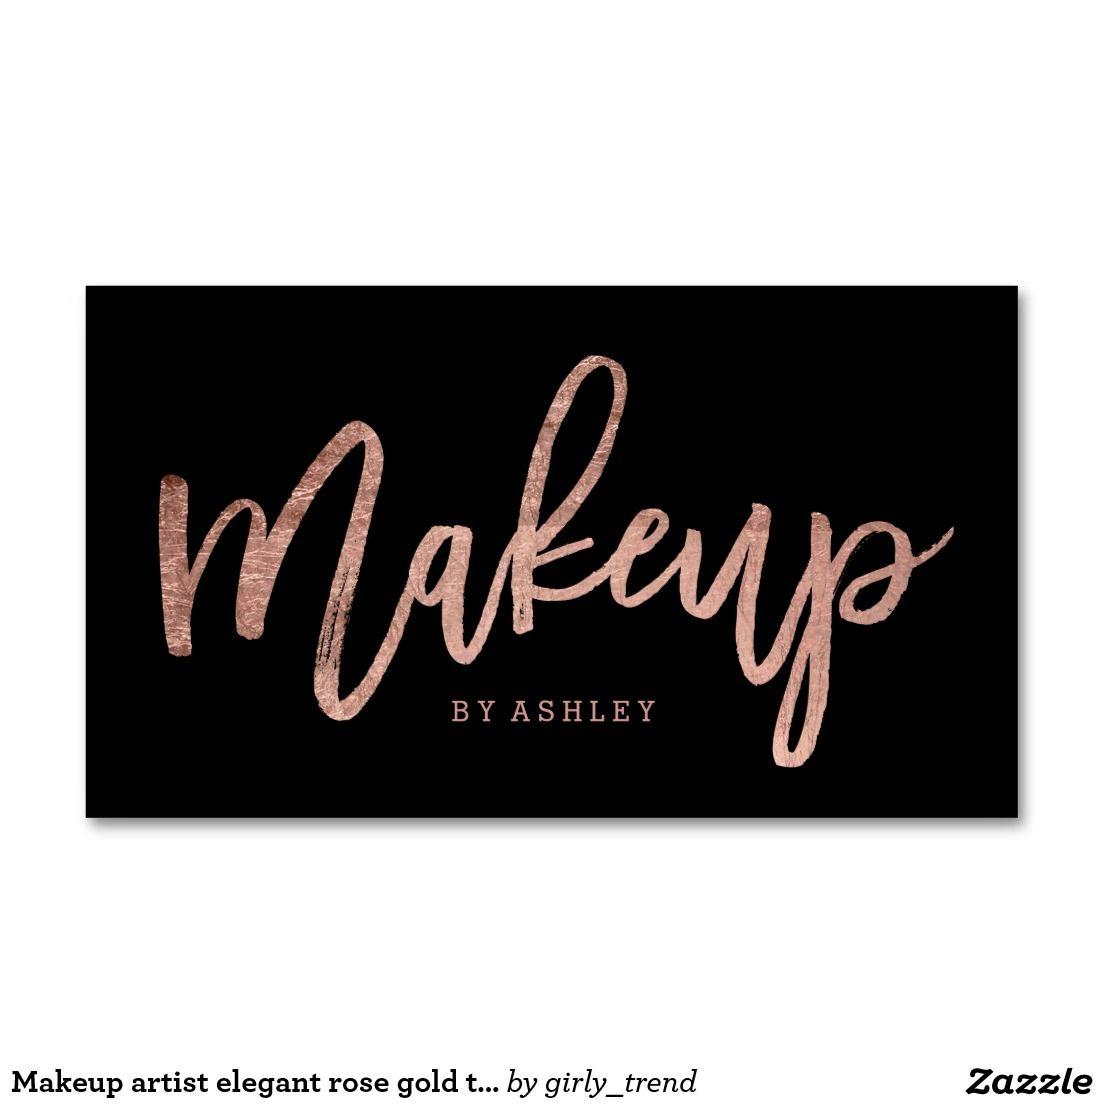 Rose Gold and Black Logo - Makeup artist elegant rose gold typography black business card